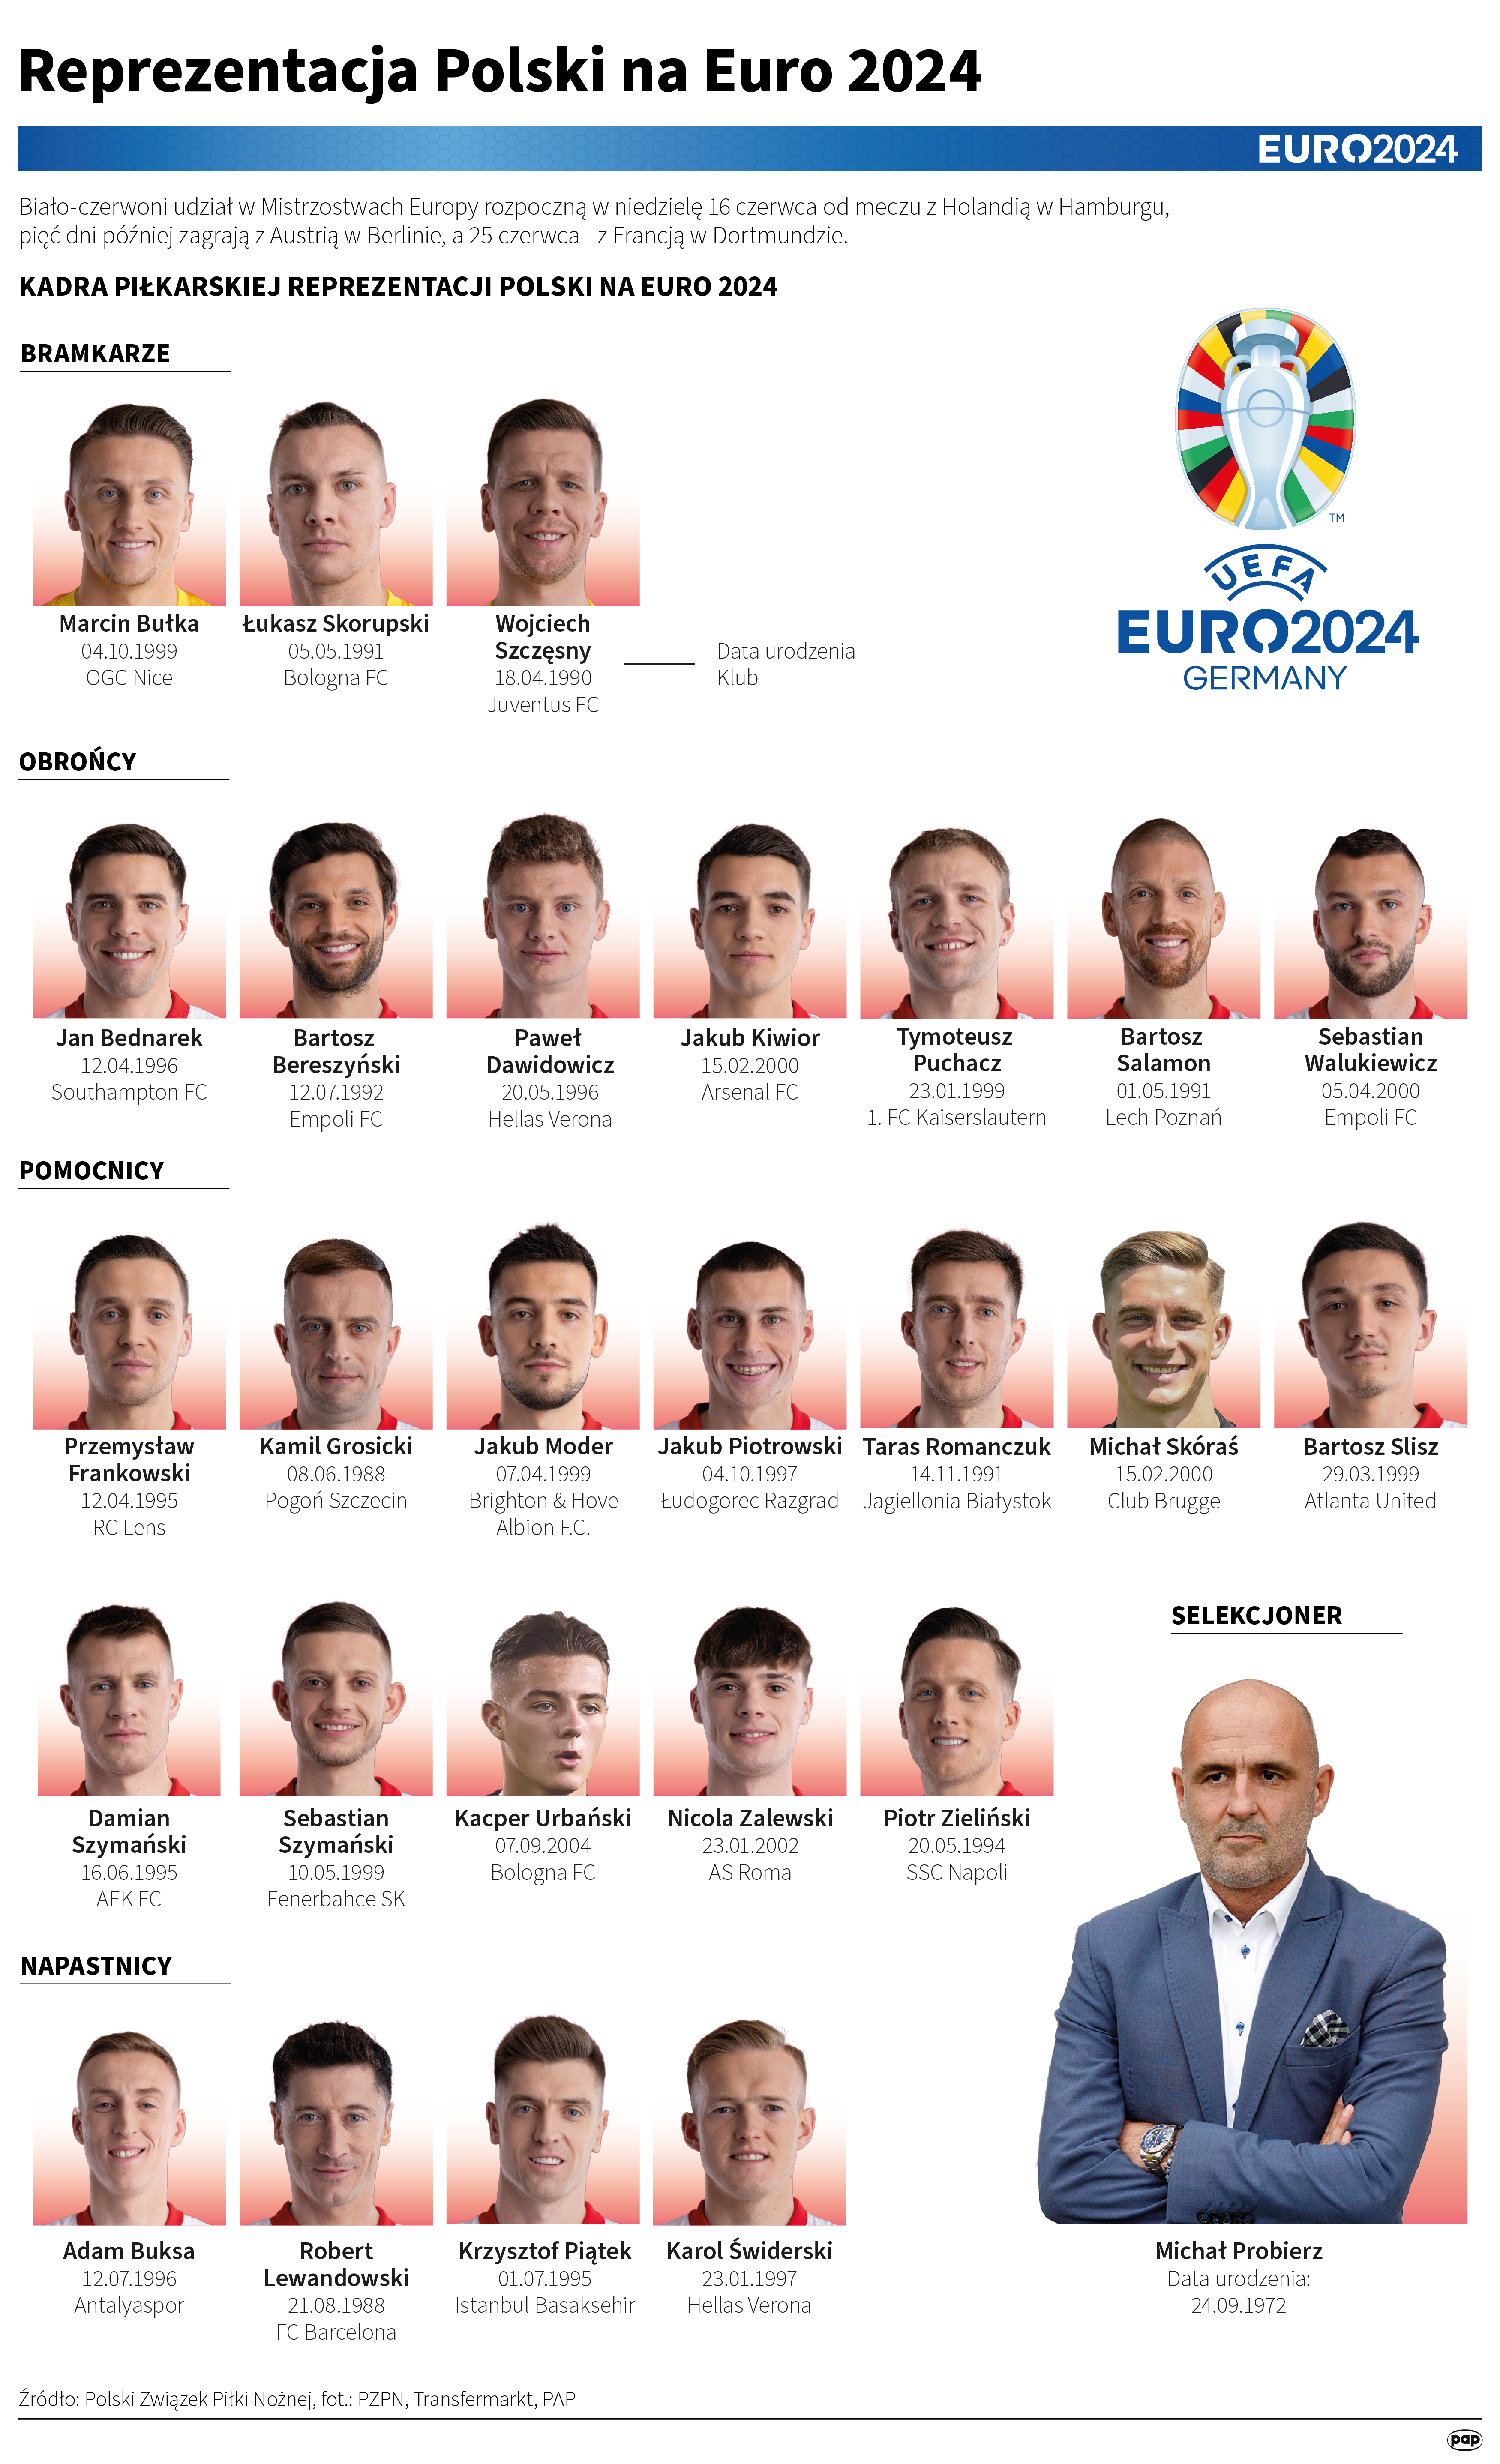 Startuje miesiąc piłkarskich emocji z Euro 2024. Przed nami ceremonia otwarcia mistrzostw Europy Radio Zachód - Lubuskie